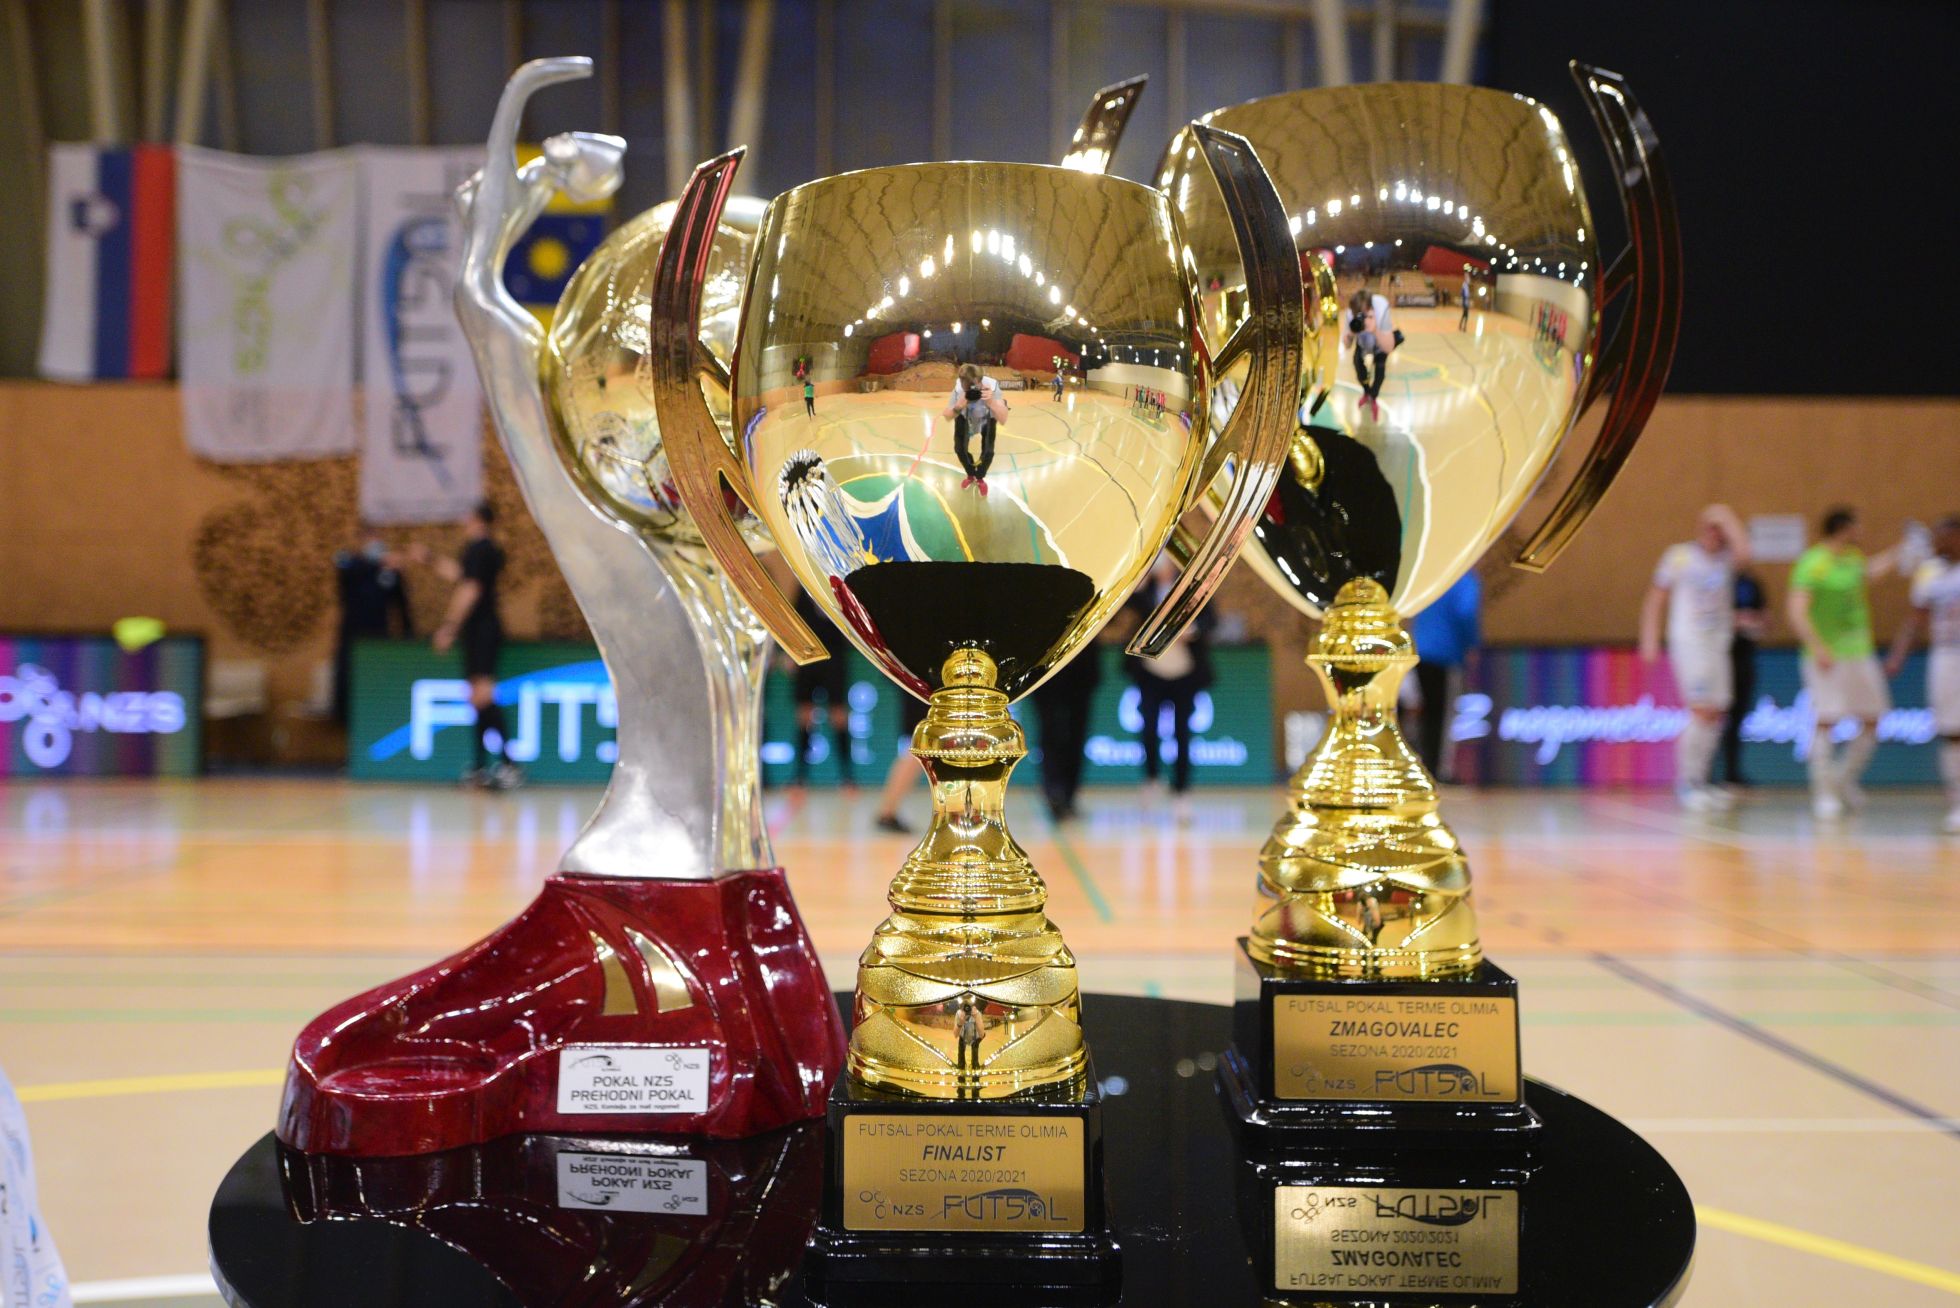 V ŽIVO: Četrtfinale pokala Terme Olimia in polfinale ženskega futsal pokala